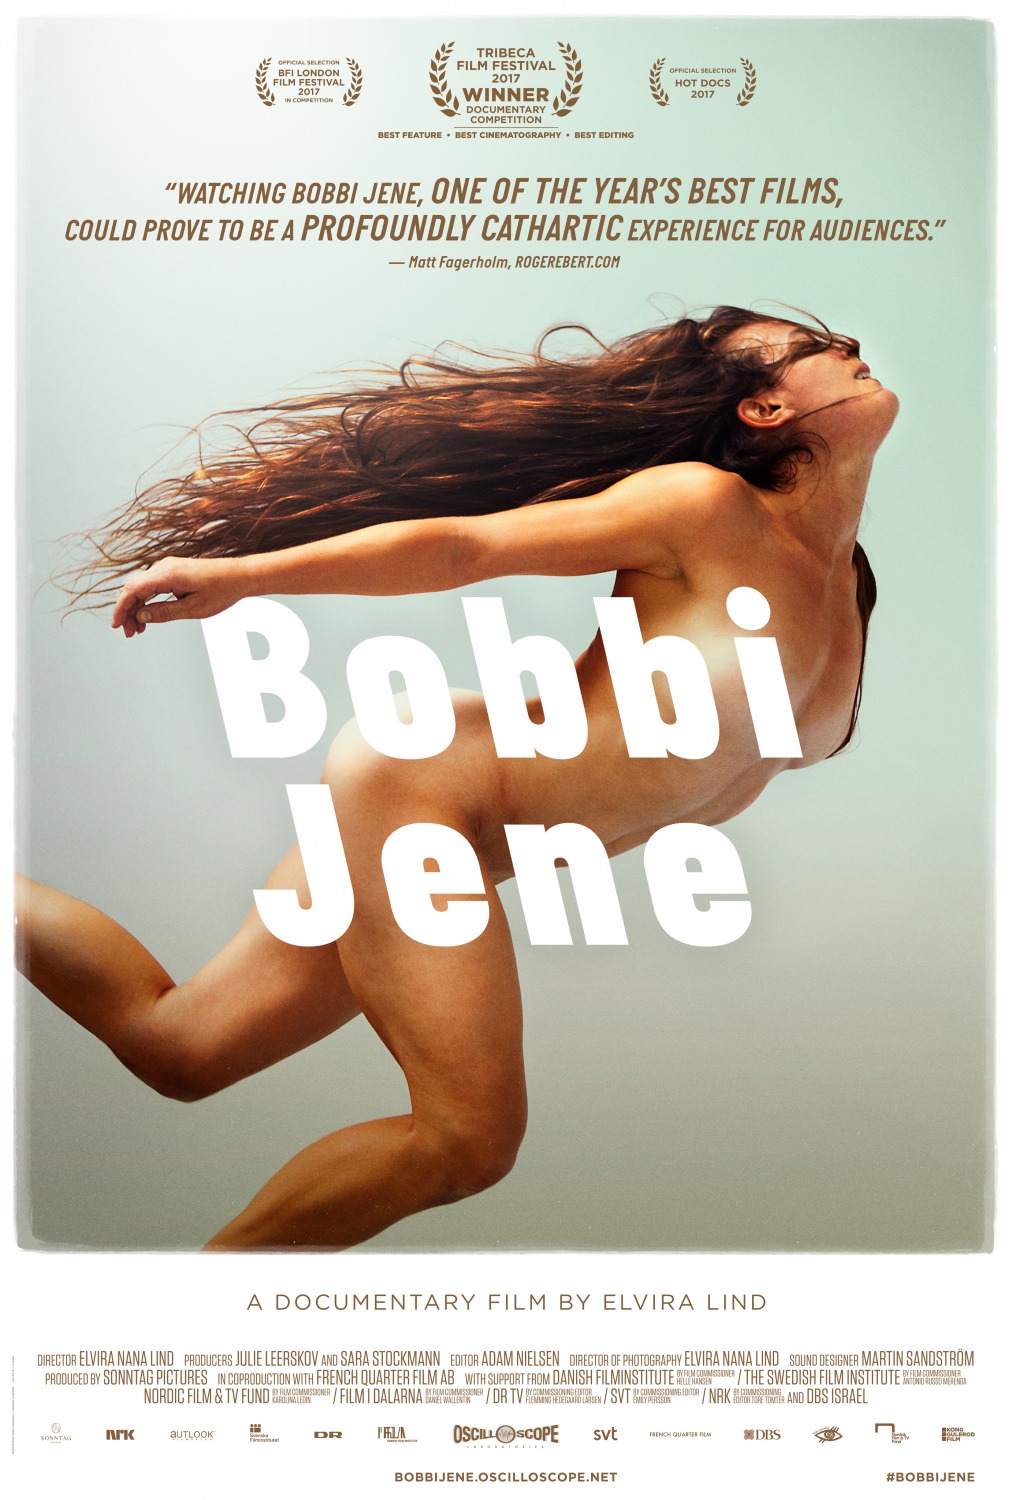 Extra Large Movie Poster Image for Bobbi Jene 